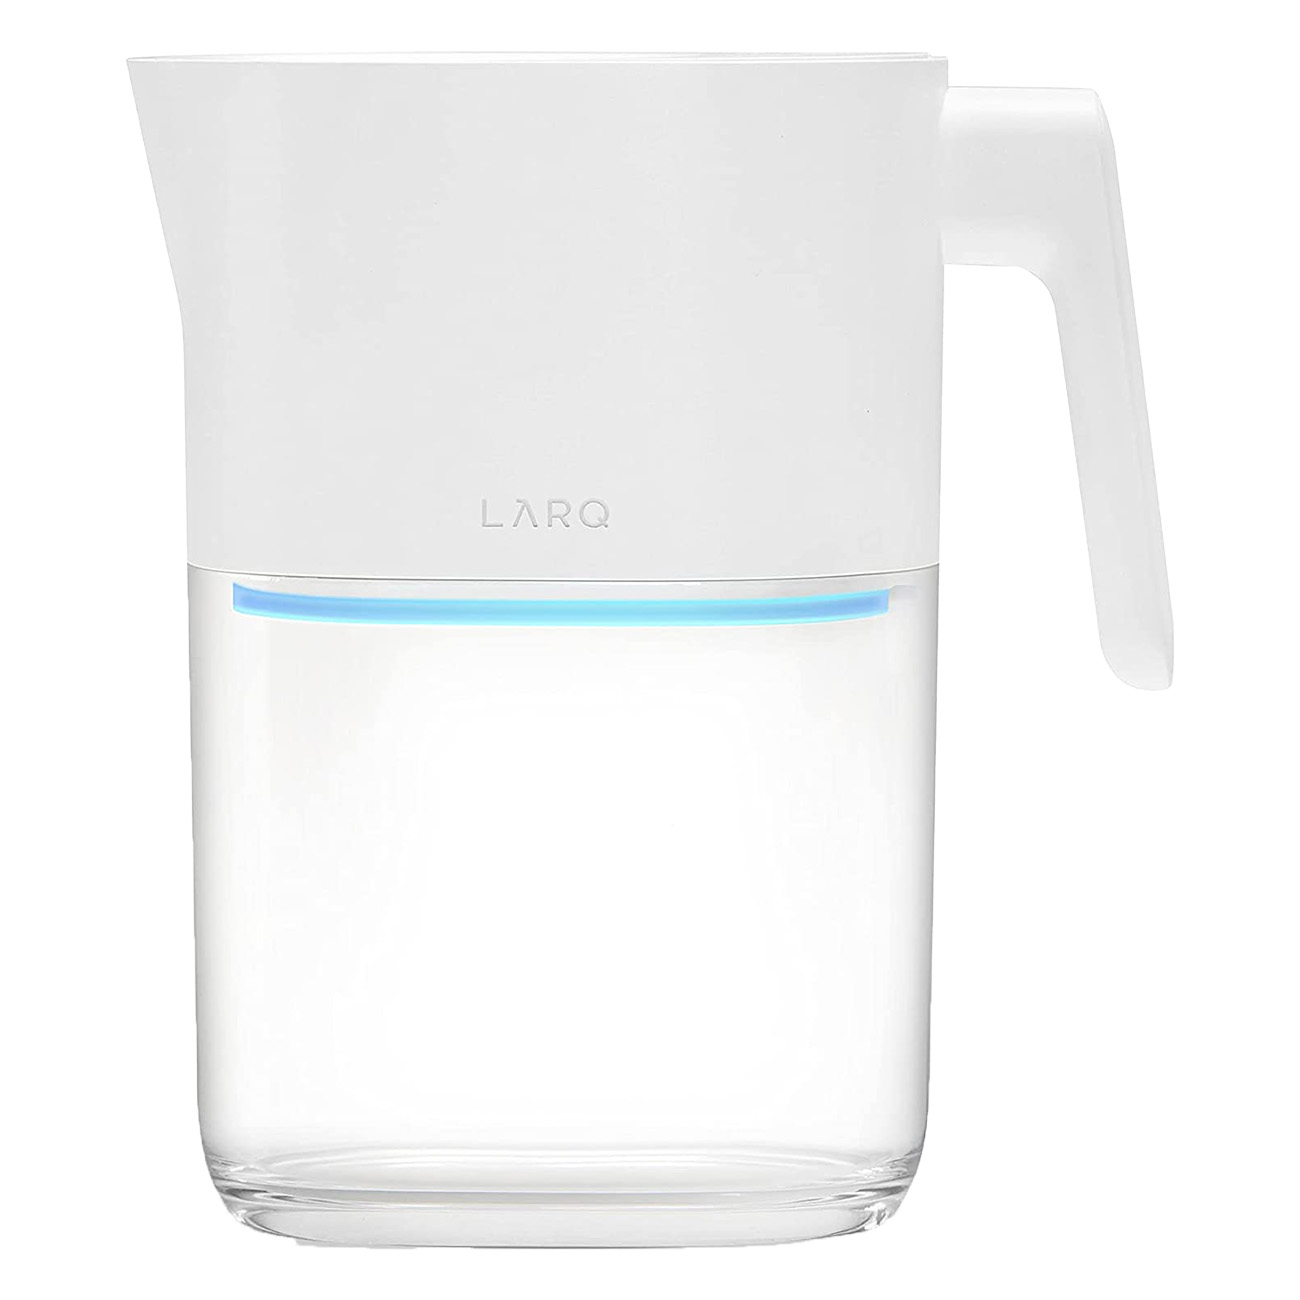 LARQ Pitcher PureVis Wasserfilter, Weiß